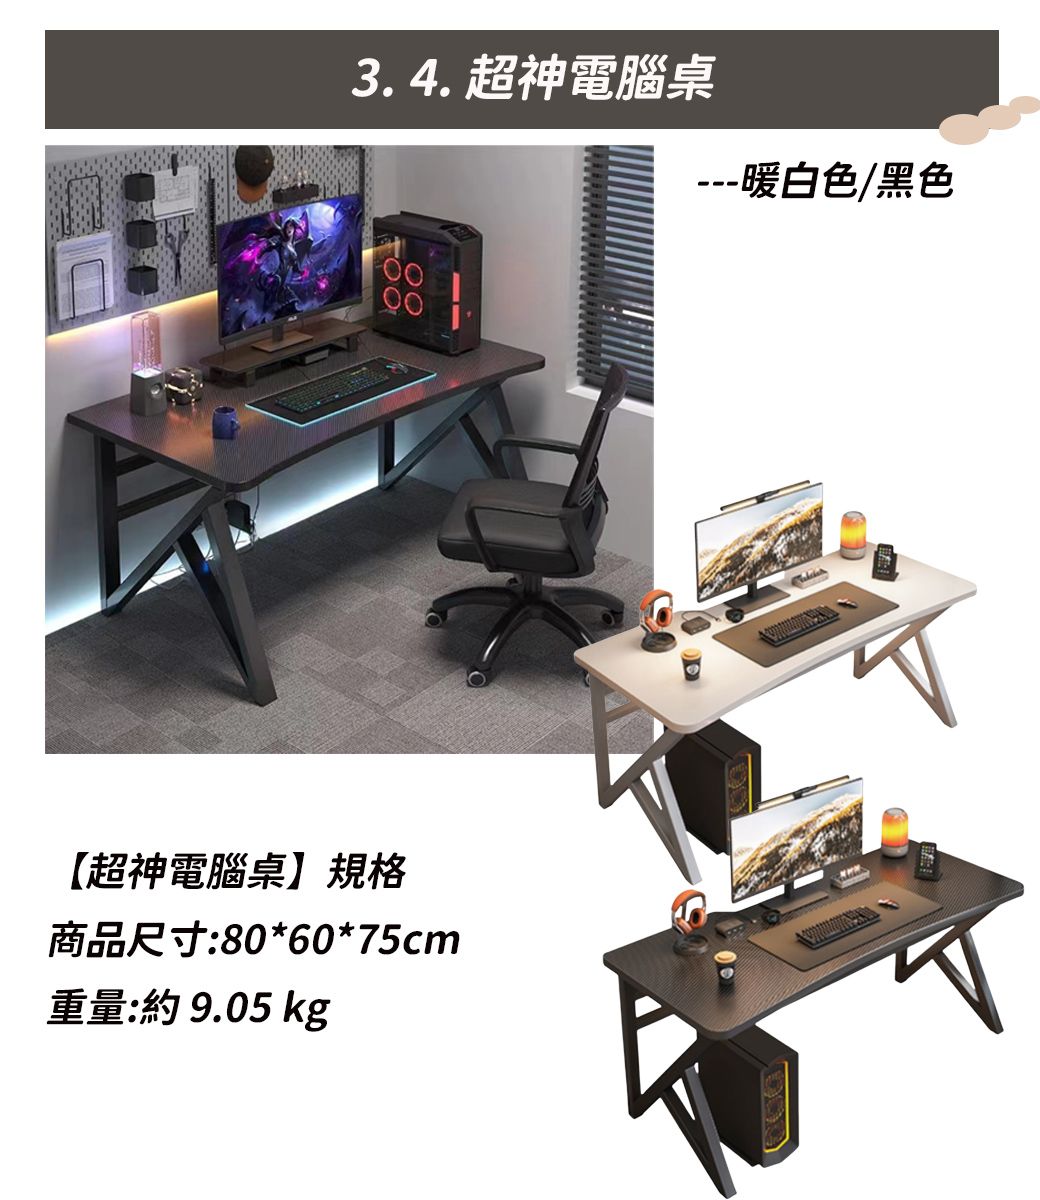 3.4. 超神電腦桌---暖白色/黑色【超神電腦桌】規格商品尺寸:80*60*75cm重量: 9.05 kg